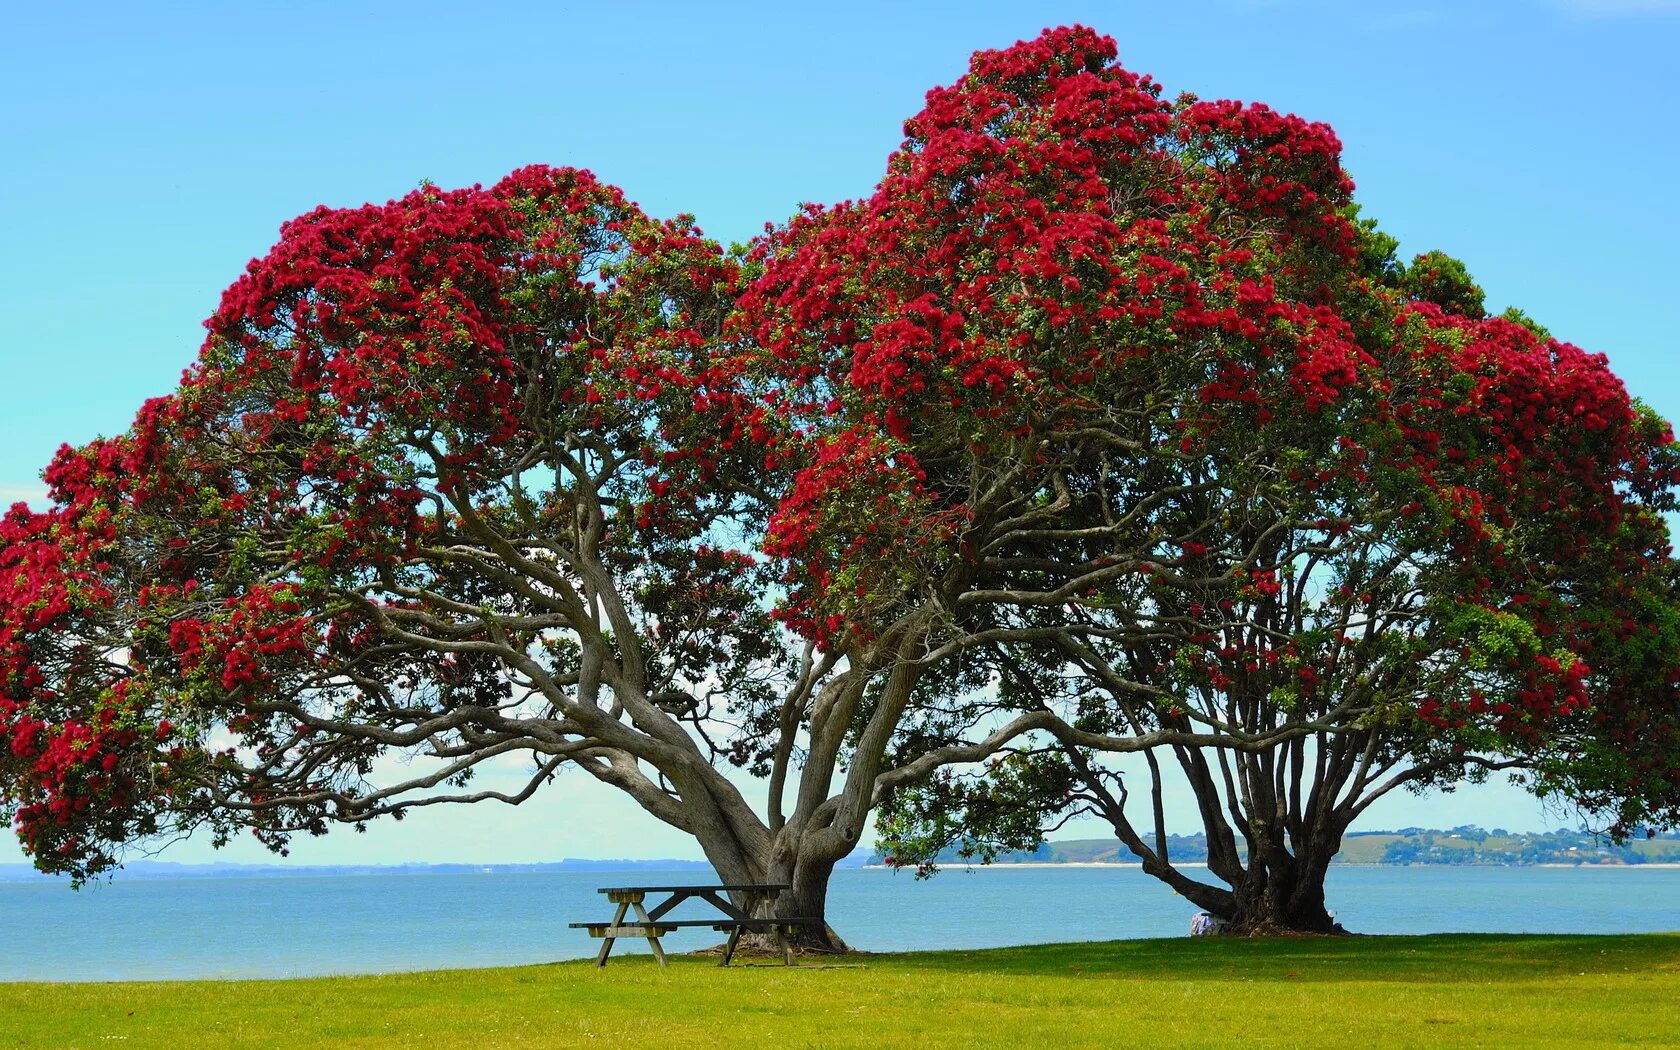 Метросидерос зонтичный. Новая Зеландия цветы Похутукава. Метросидерос холмовой. Дерево в новой Зеландии Похутукава. Культовые деревья